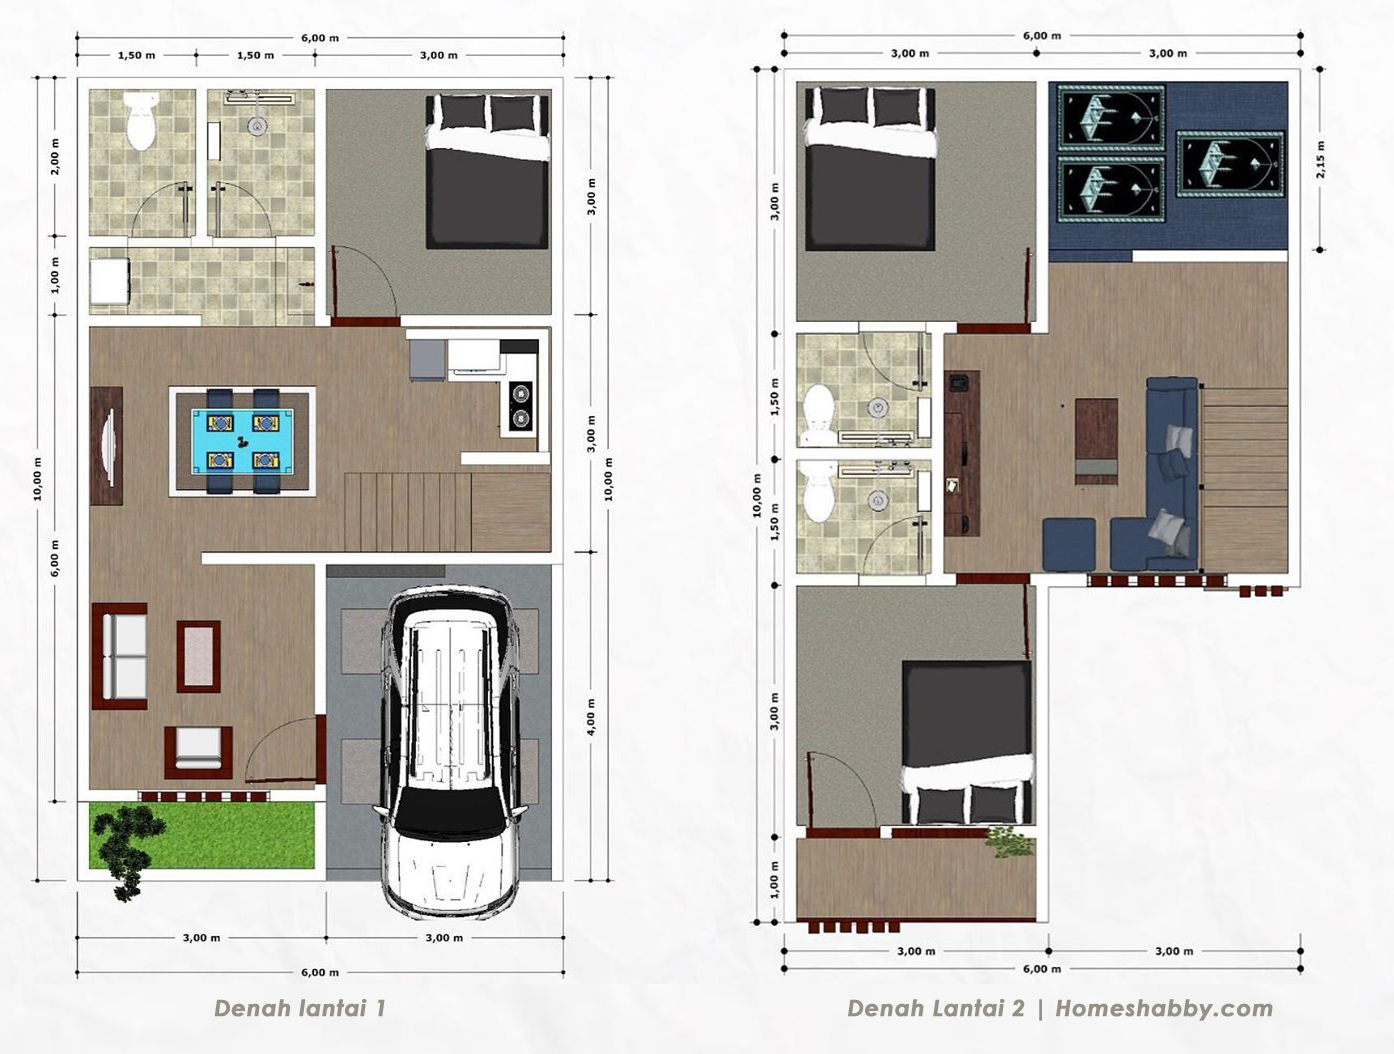 Desain Dan Denah Rumah Minimalis 2 Lantai Bentuk Leter L Lengkap Dengan Mushola Minimalis Homeshabby Com Design Home Plans Home Decorating And Interior Design